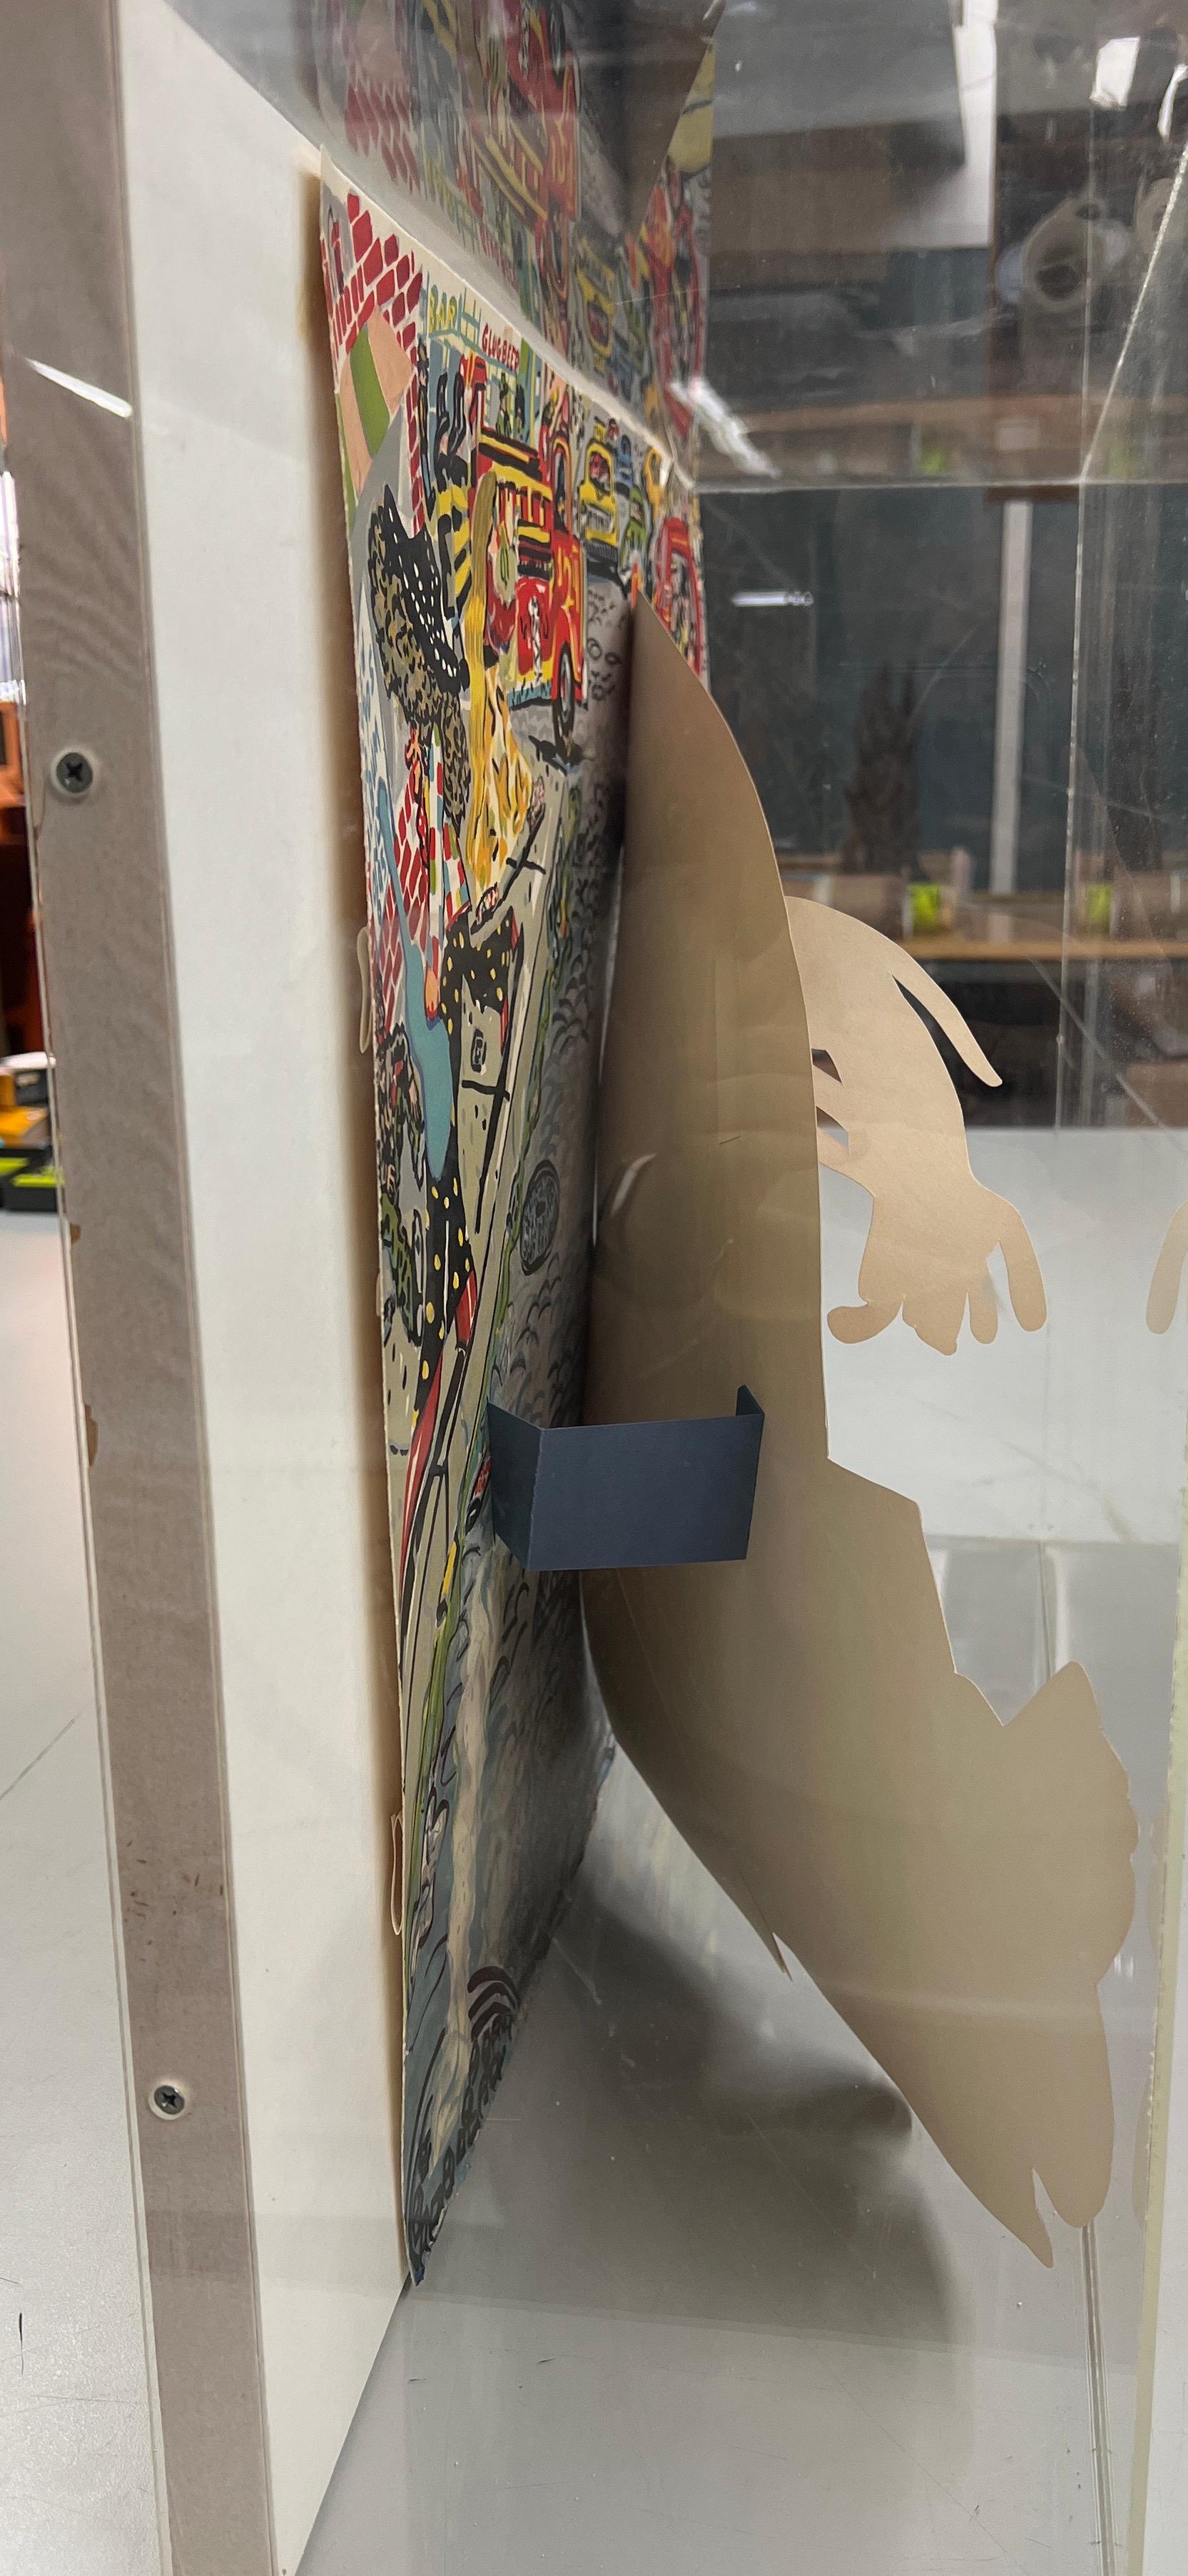 Ein sehr guter Abdruck dieser dreidimensionalen Farblithographie auf Arches Cover Papier in einem Plexiglasetui. Signiert, datiert und nummeriert 62/75 in Bleistift von Grooms. Gedruckt im Bank Street Atelier, New York. Herausgegeben von Abrams